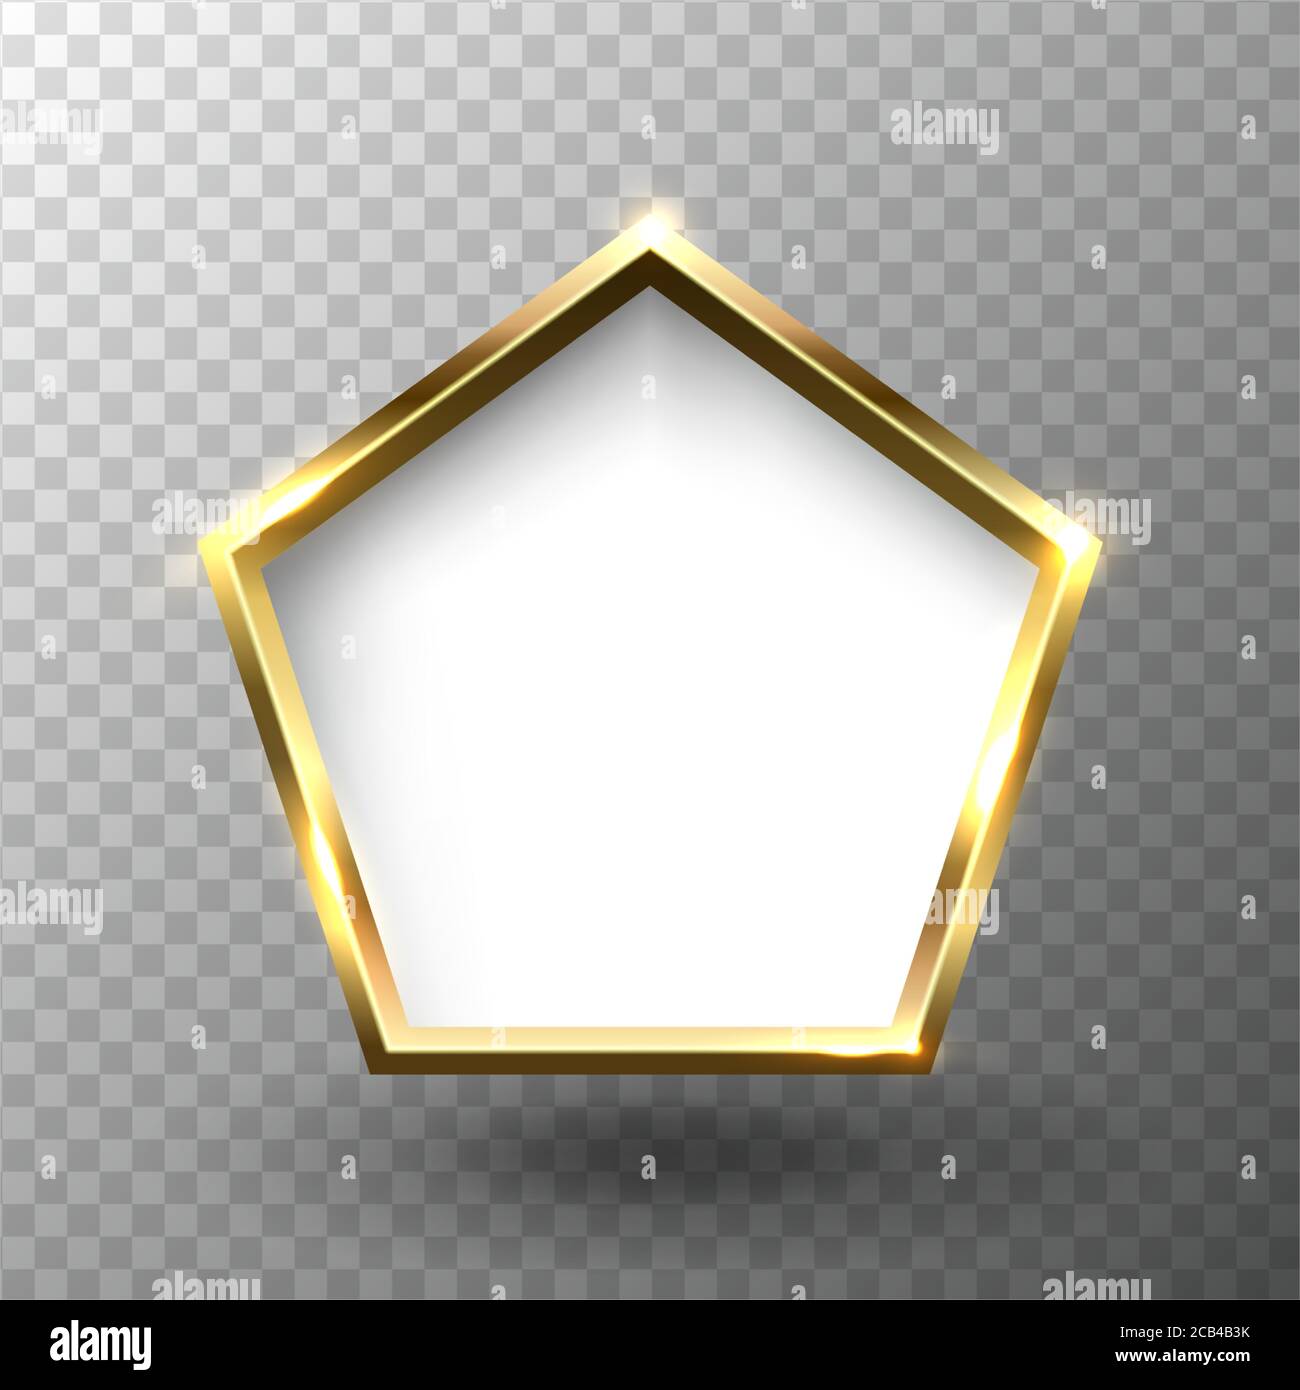 Cornice in pentagono dorato lucido astratto con spazio vuoto bianco per il testo, su sfondo trasparente, illustrazione vettoriale. Illustrazione Vettoriale